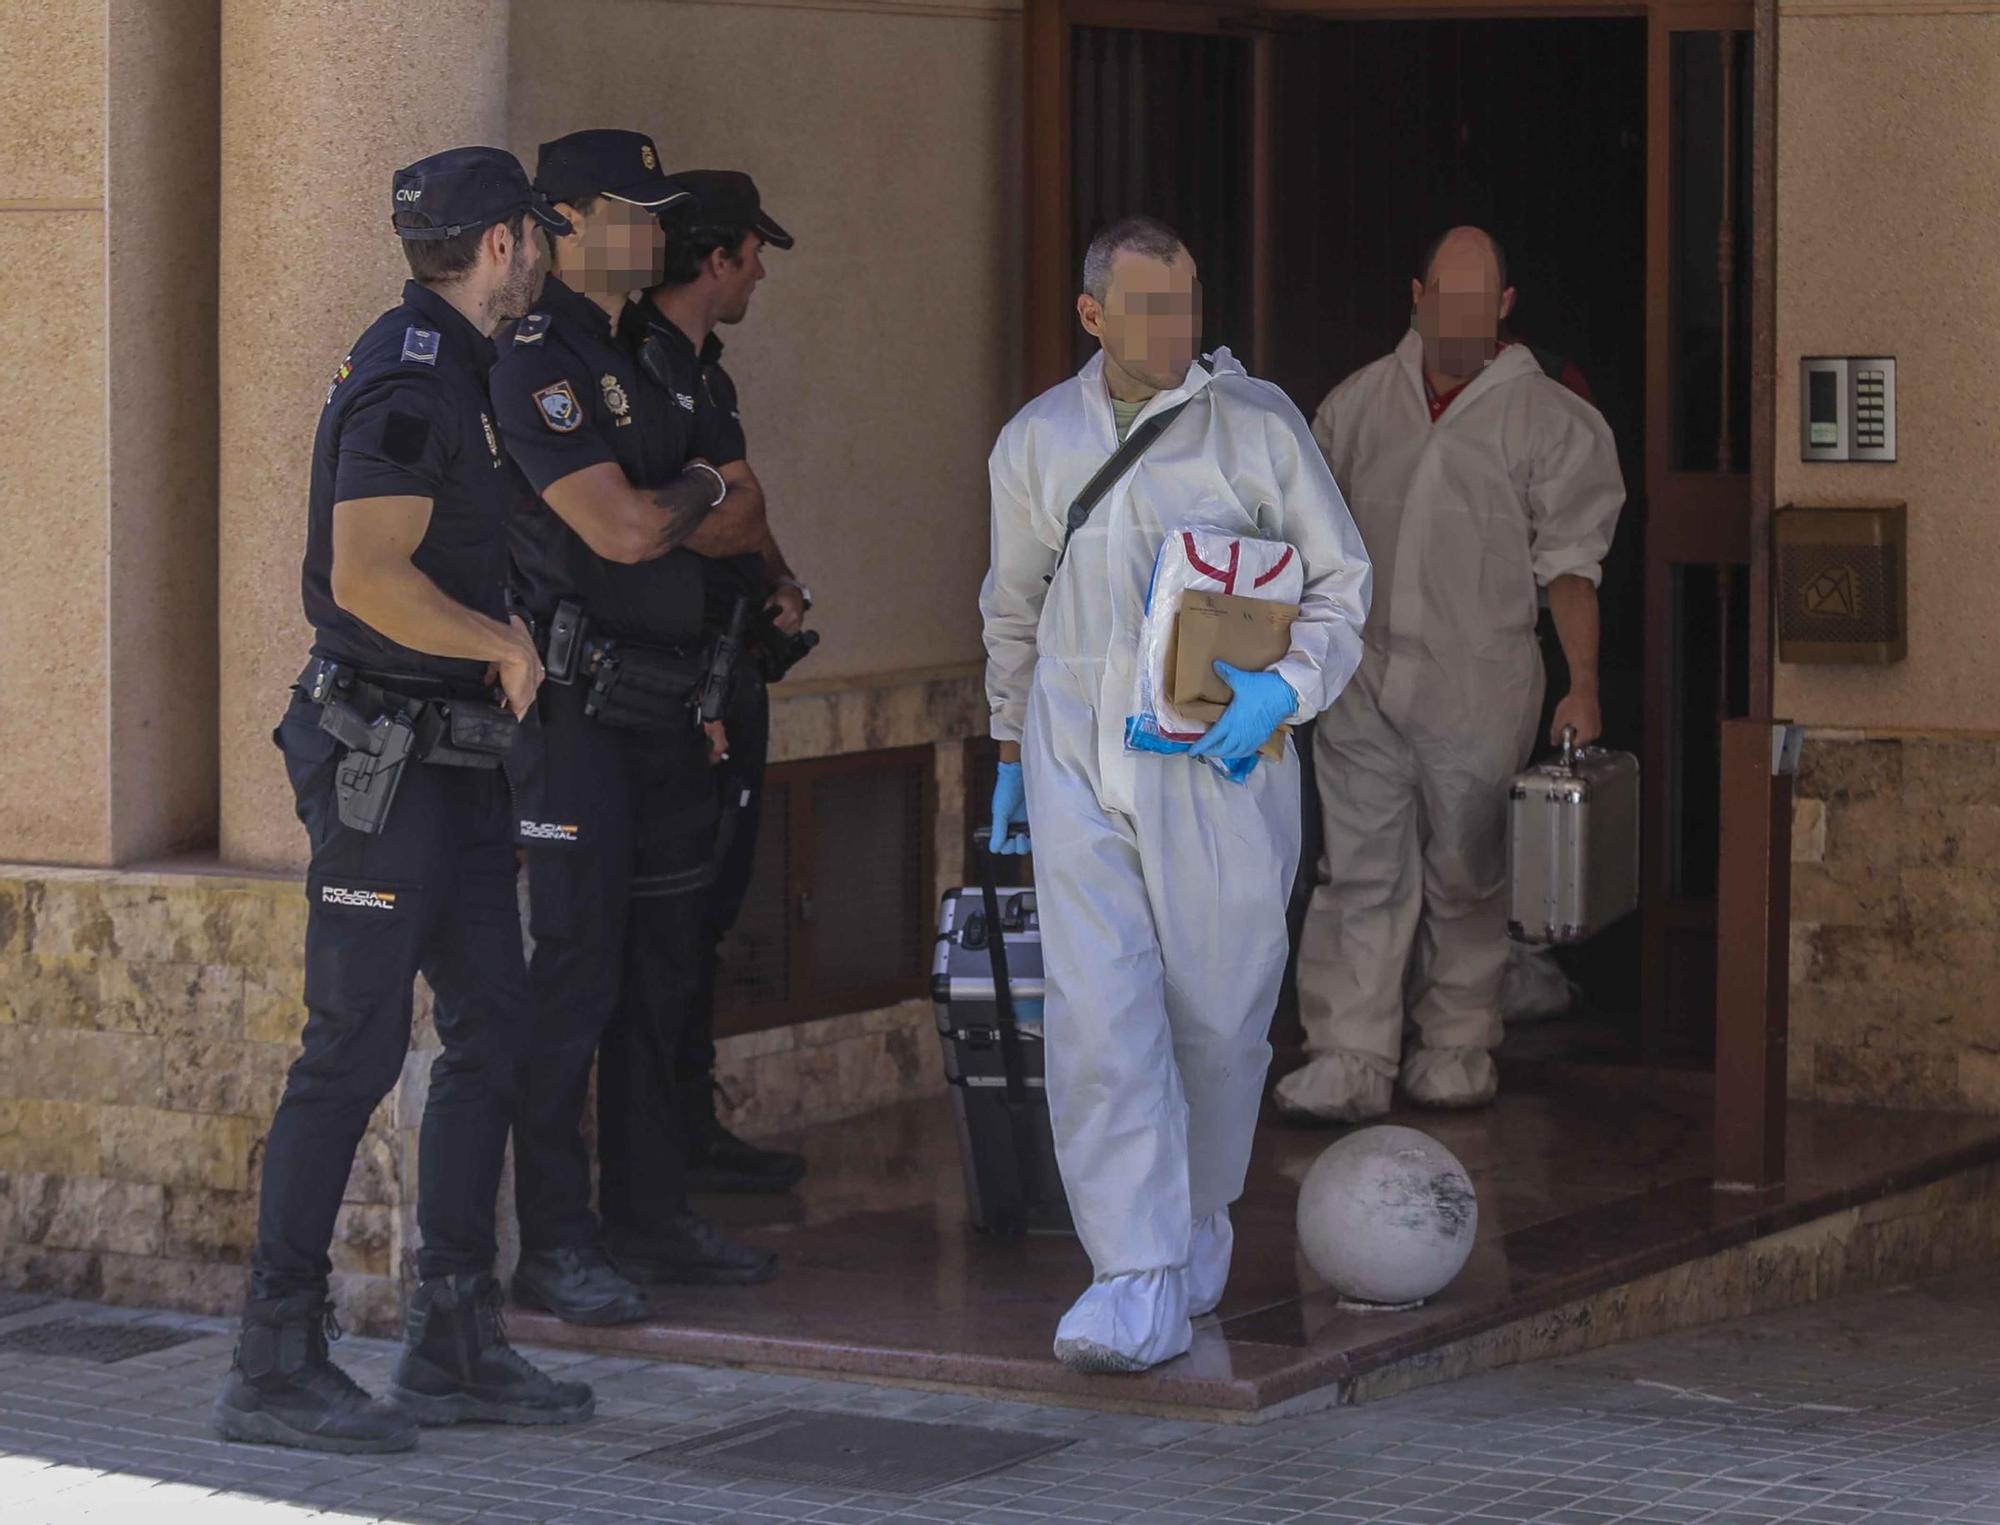 Aaesinato en Elche:hallan un kilo de cocaína en la vivienda del Altet